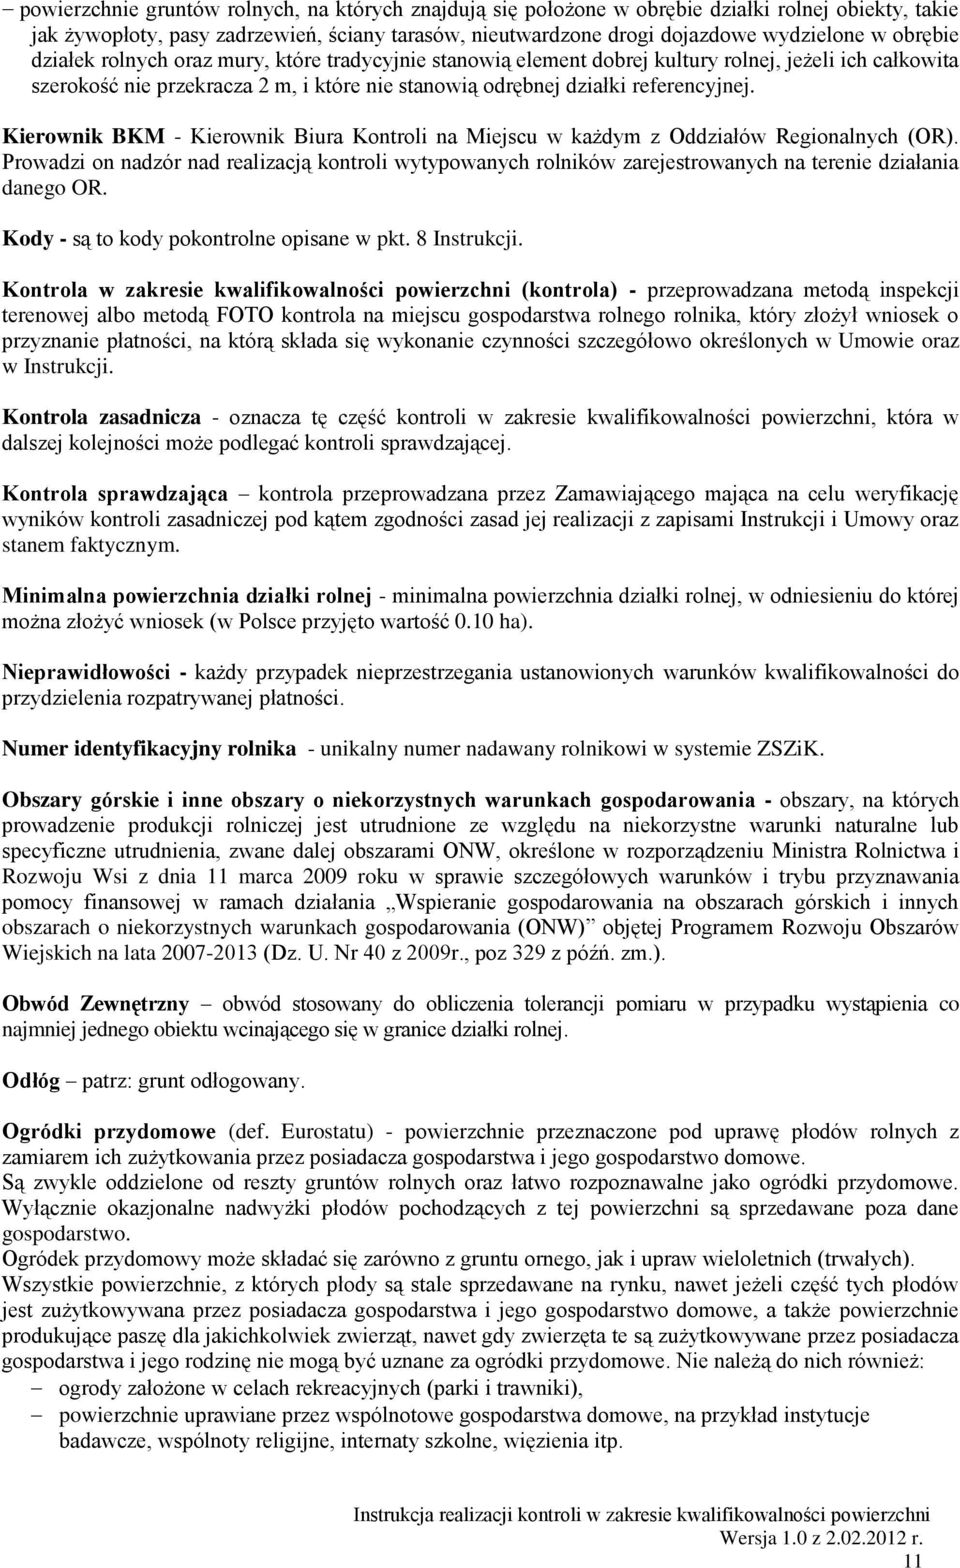 Kierownik BKM - Kierownik Biura Kontroli na Miejscu w każdym z Oddziałów Regionalnych (OR).